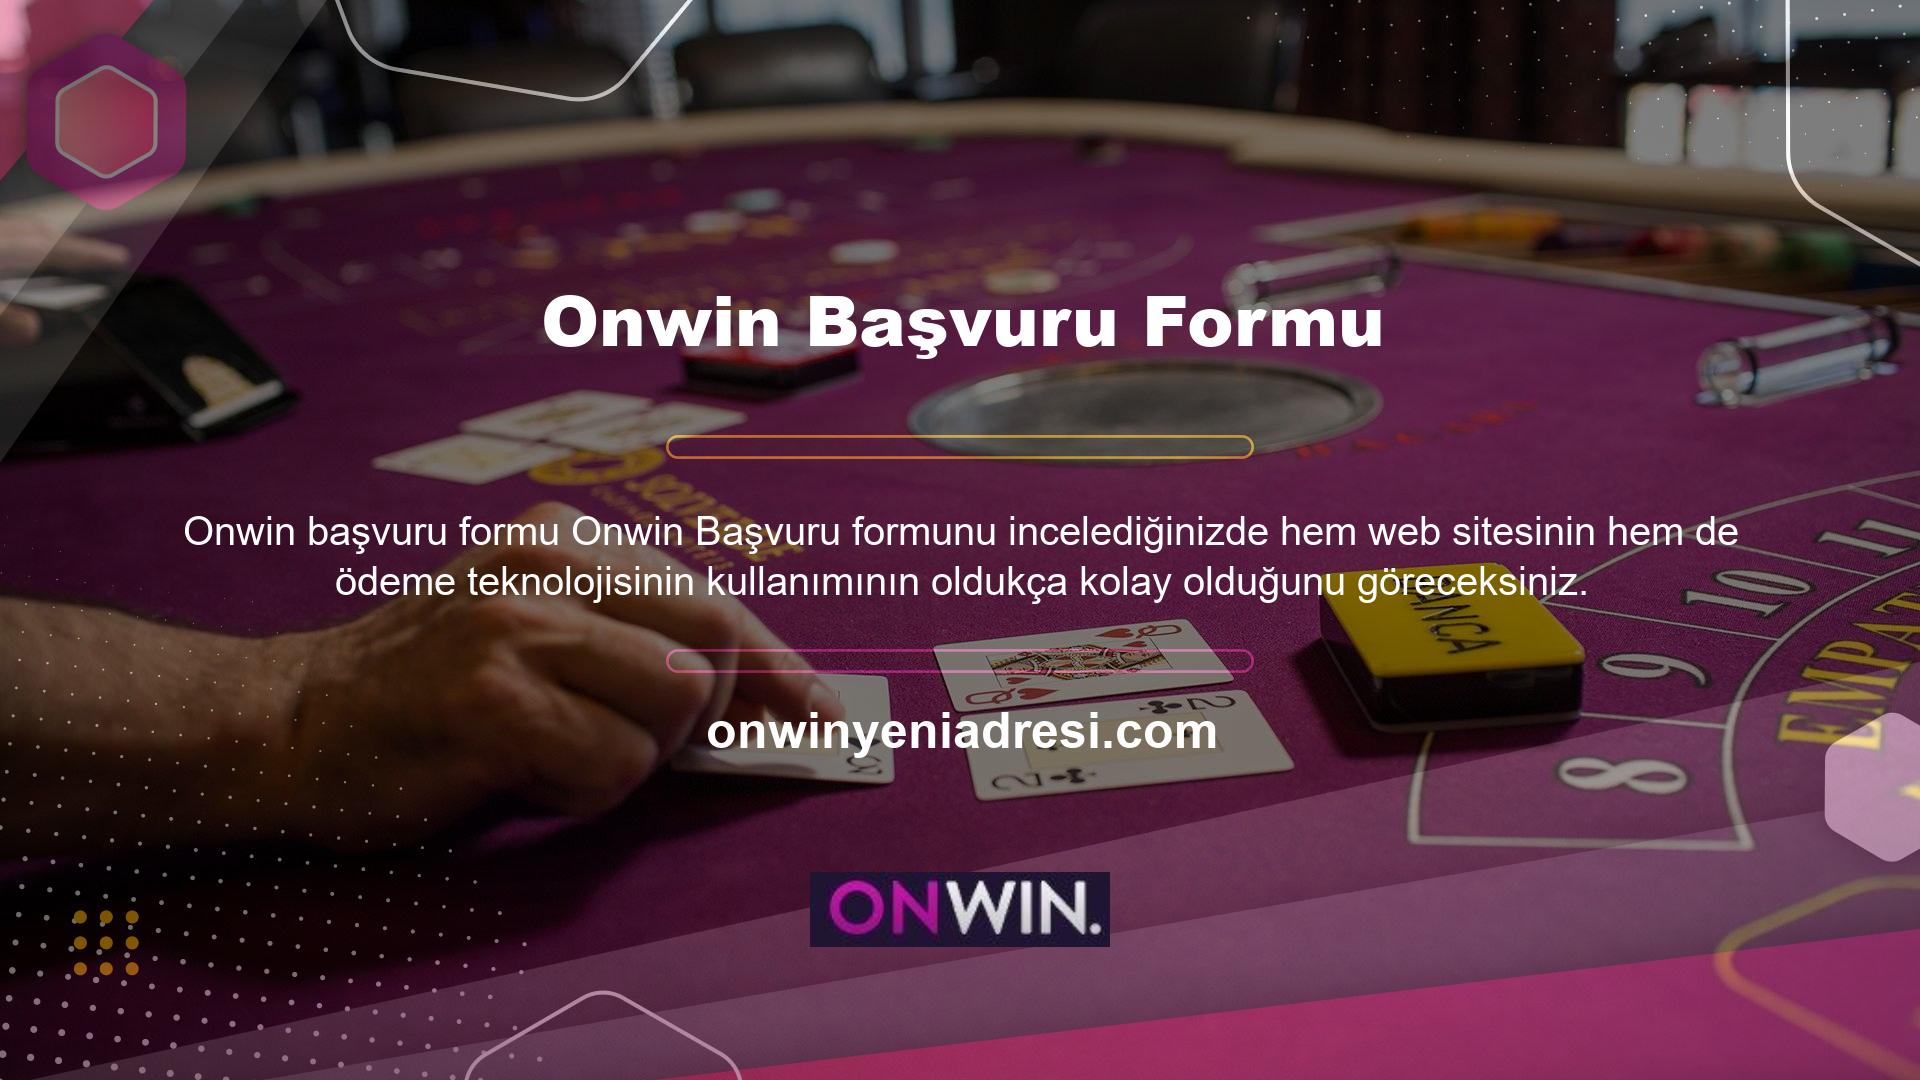 Onwin markası kullanıcıların sadece oyun oynayarak para kazanmasına izin vermiyor